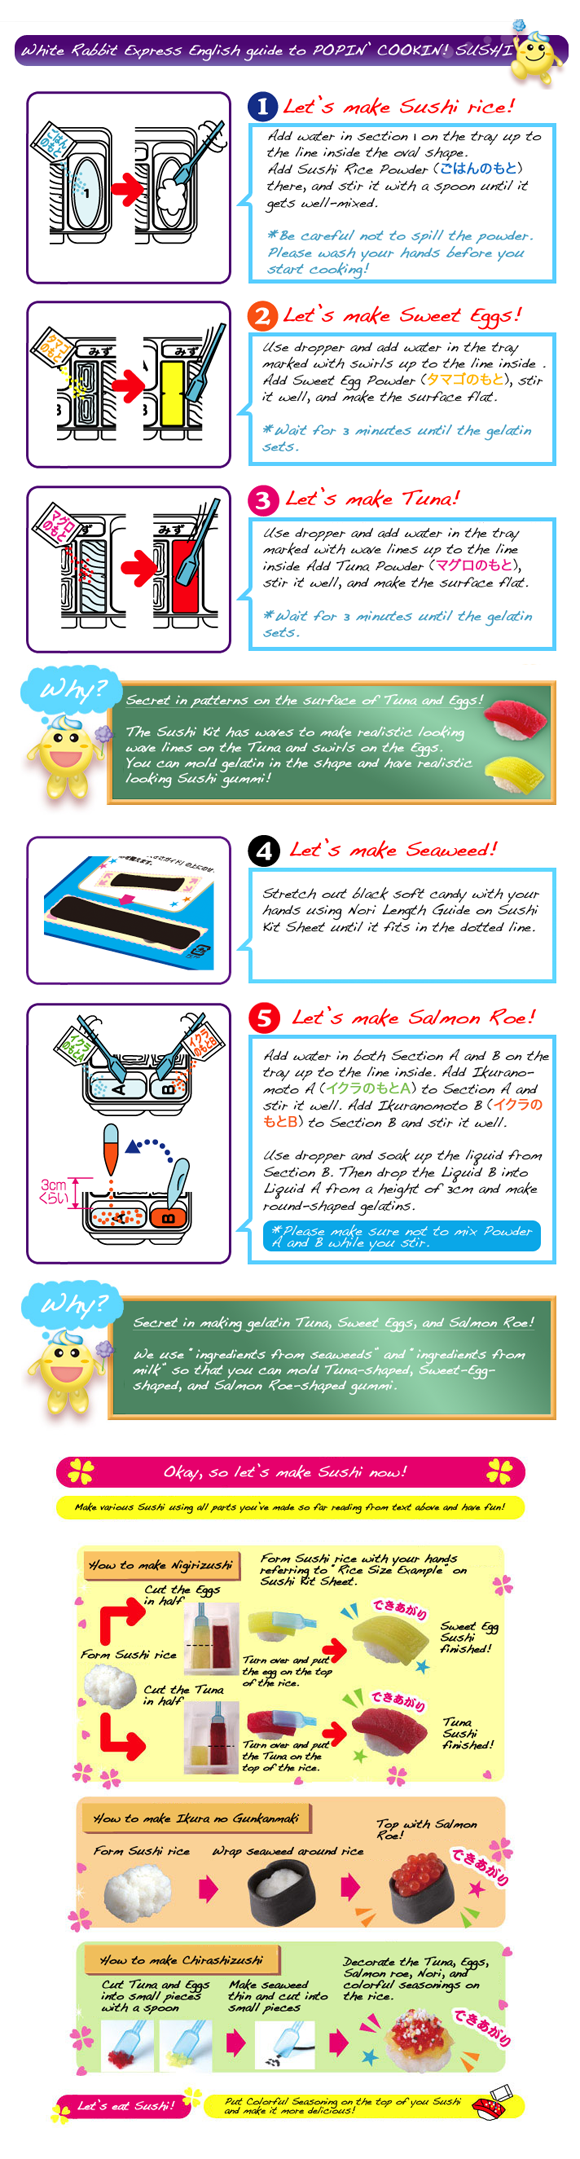 Kracie Popin Cookin SUSHI - DIY Japanese Candy Kit